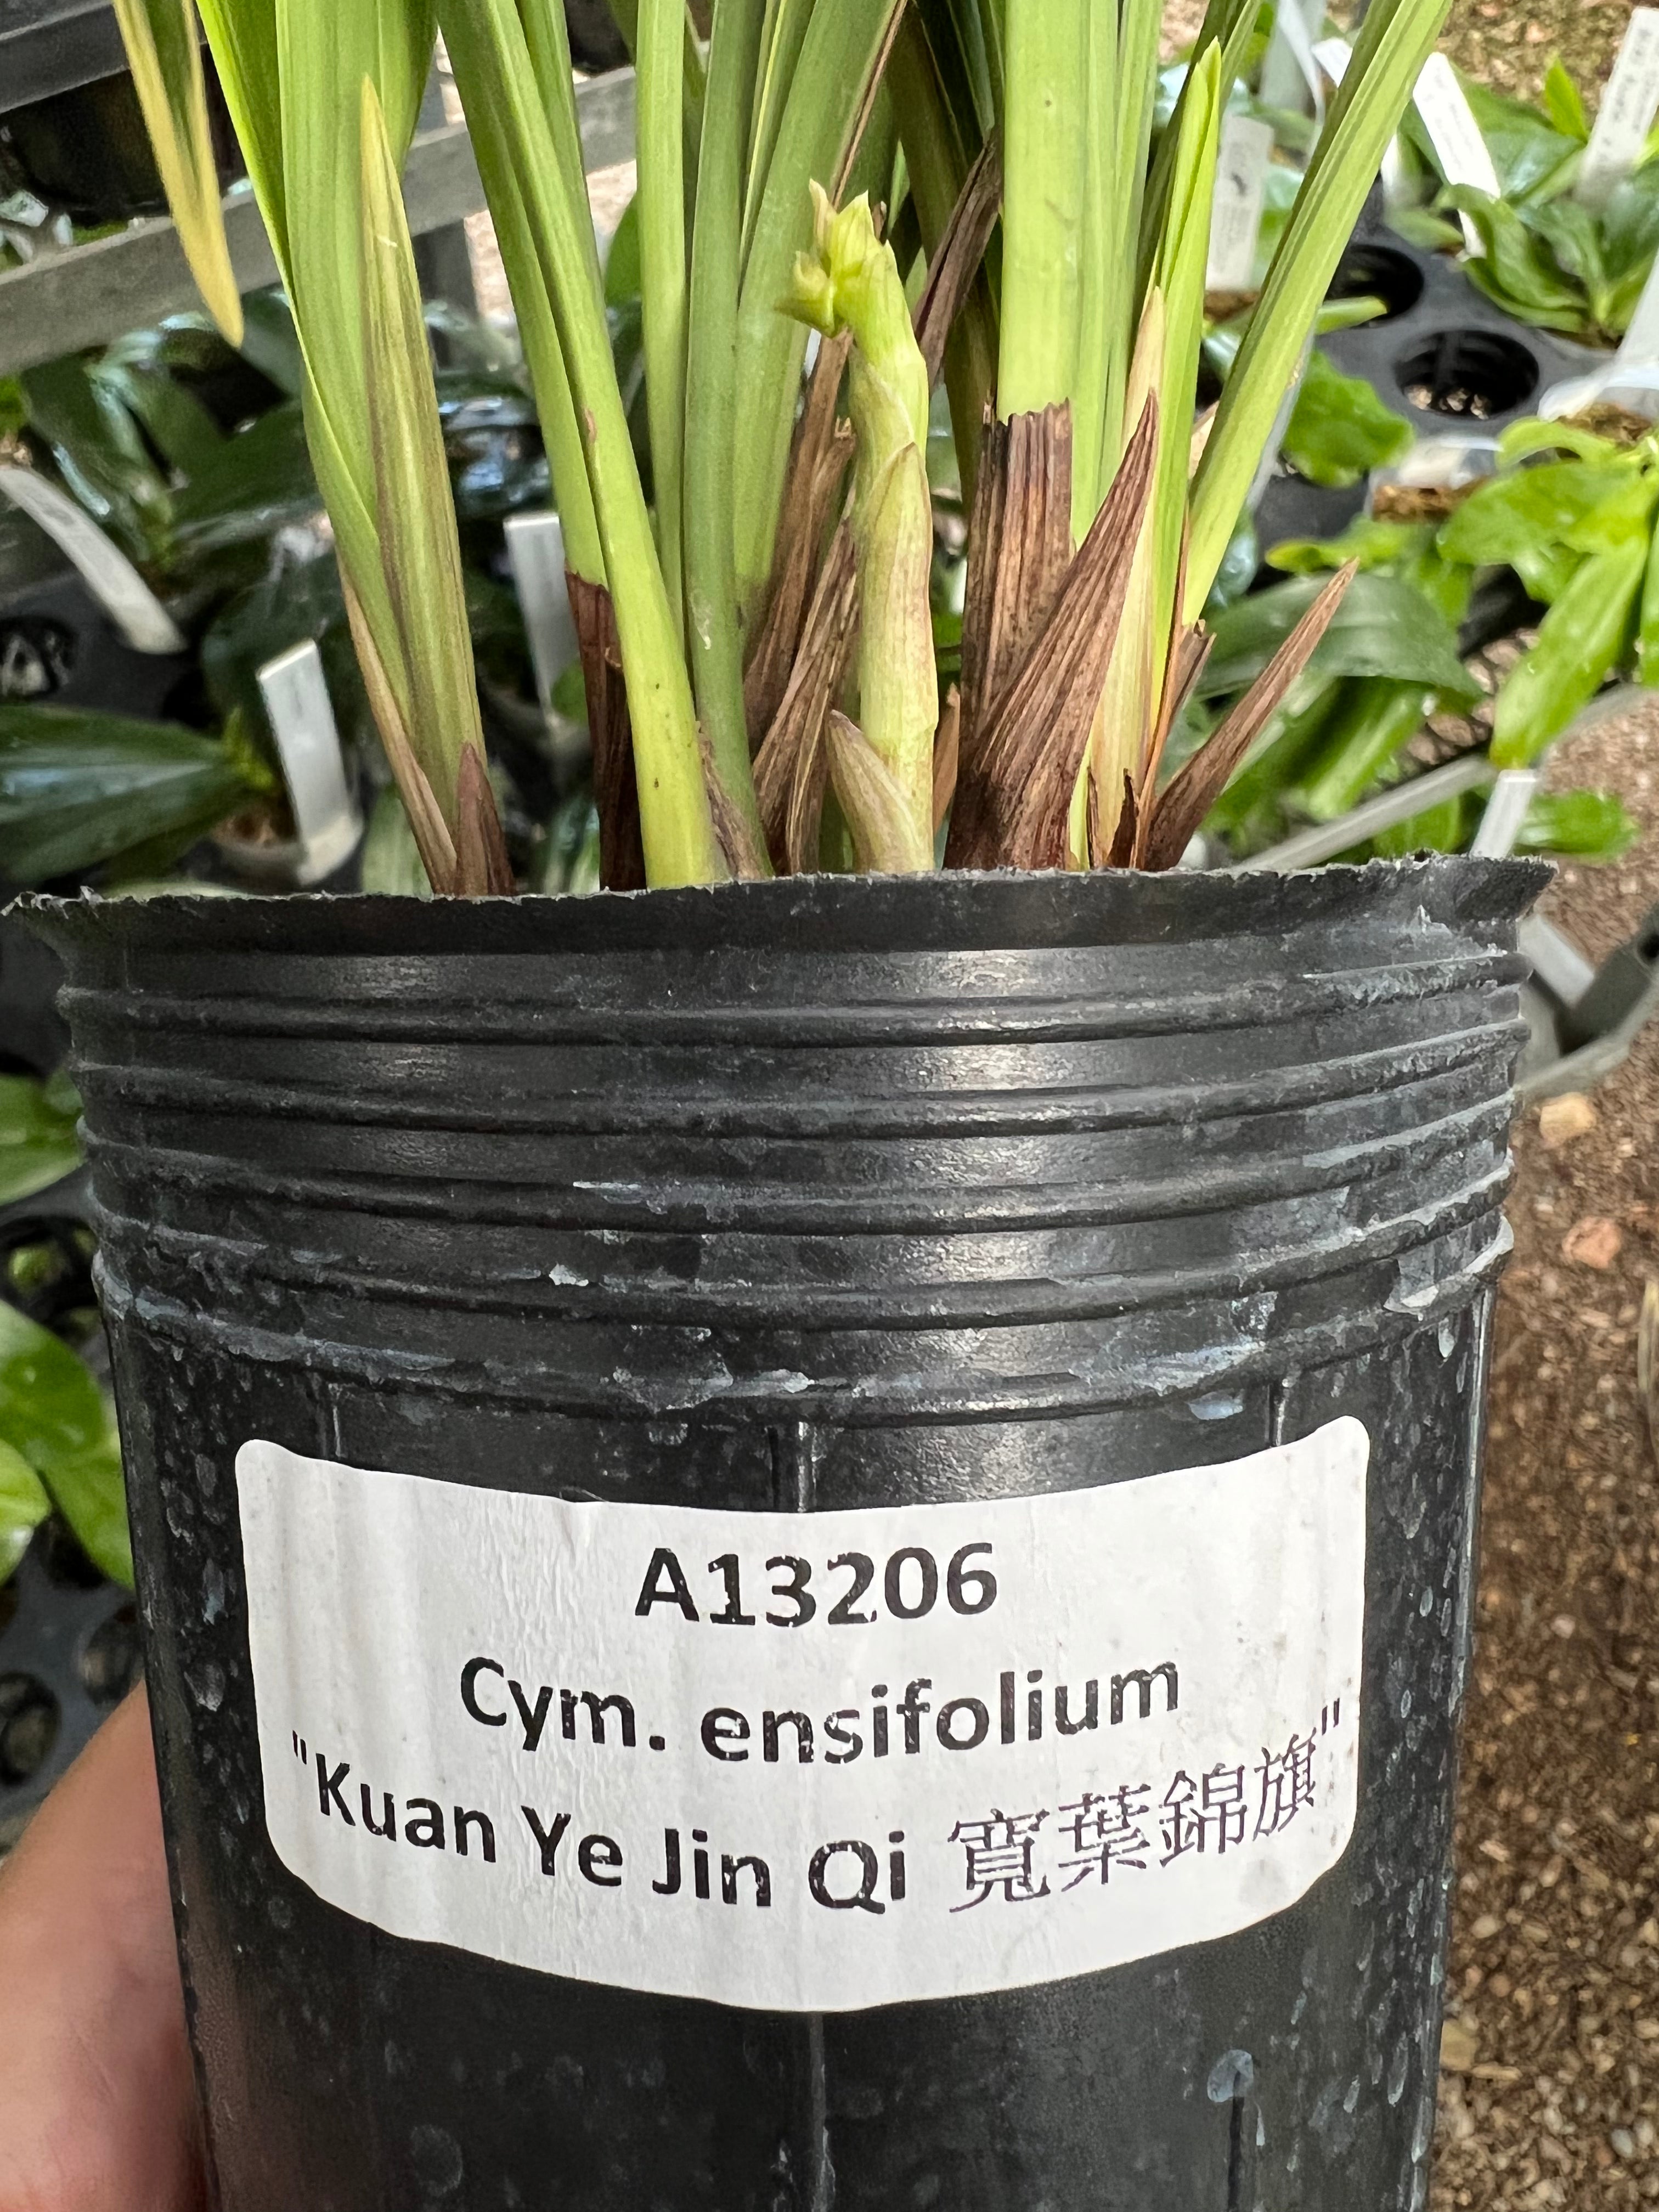 Cymbidium ensifolium ‘Kuan Ye Jin Qi’